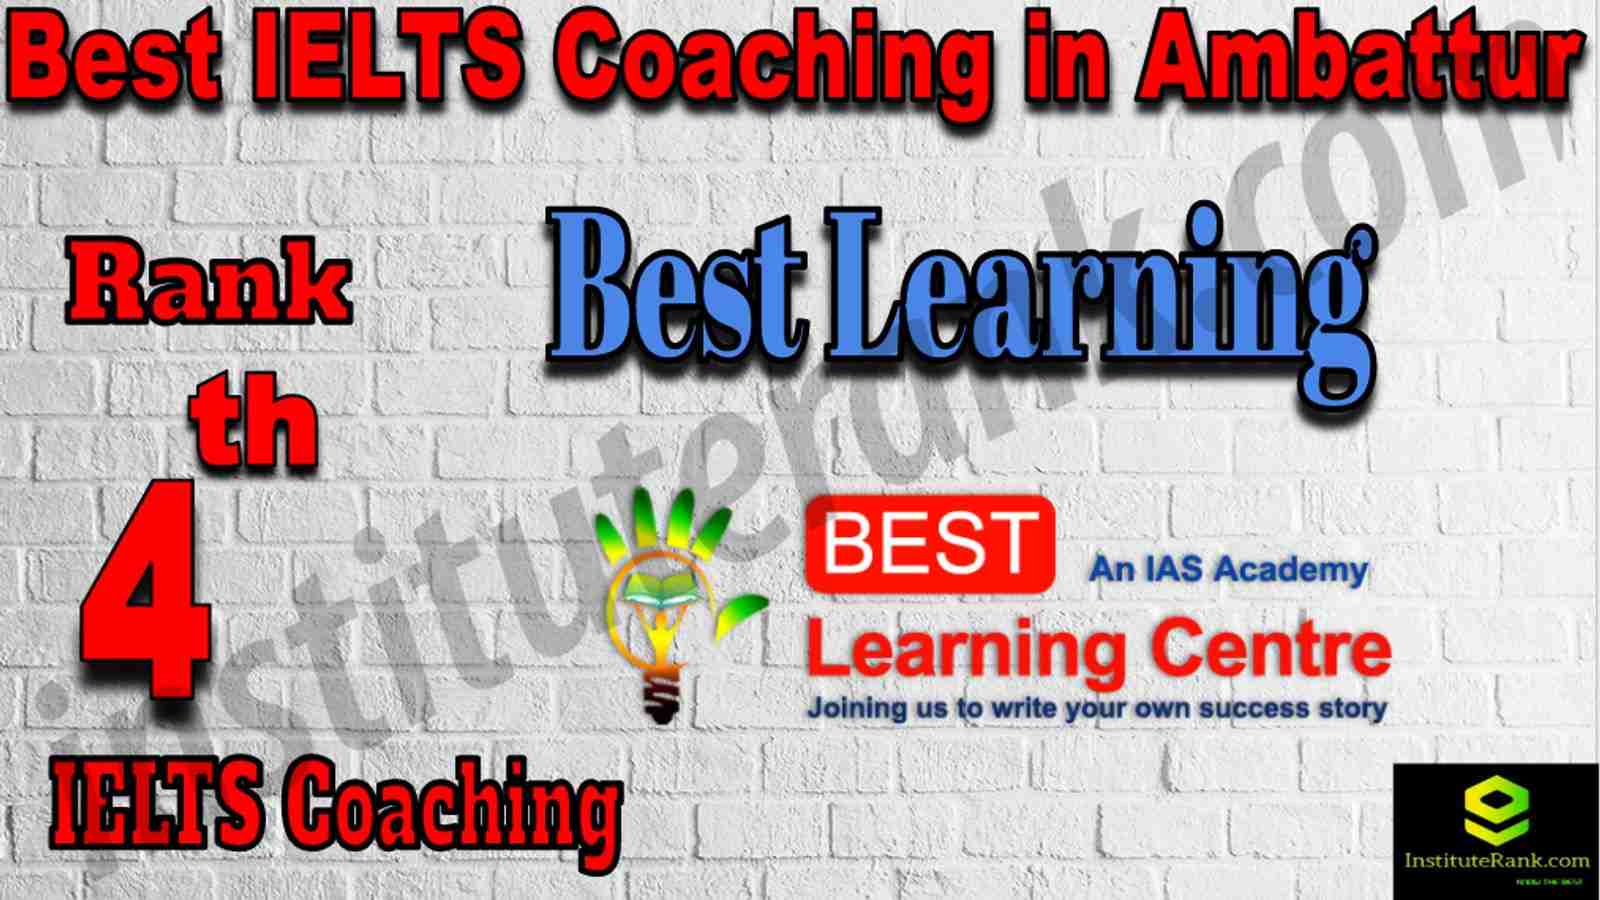 4th Best IELTS Coaching in Ambattur